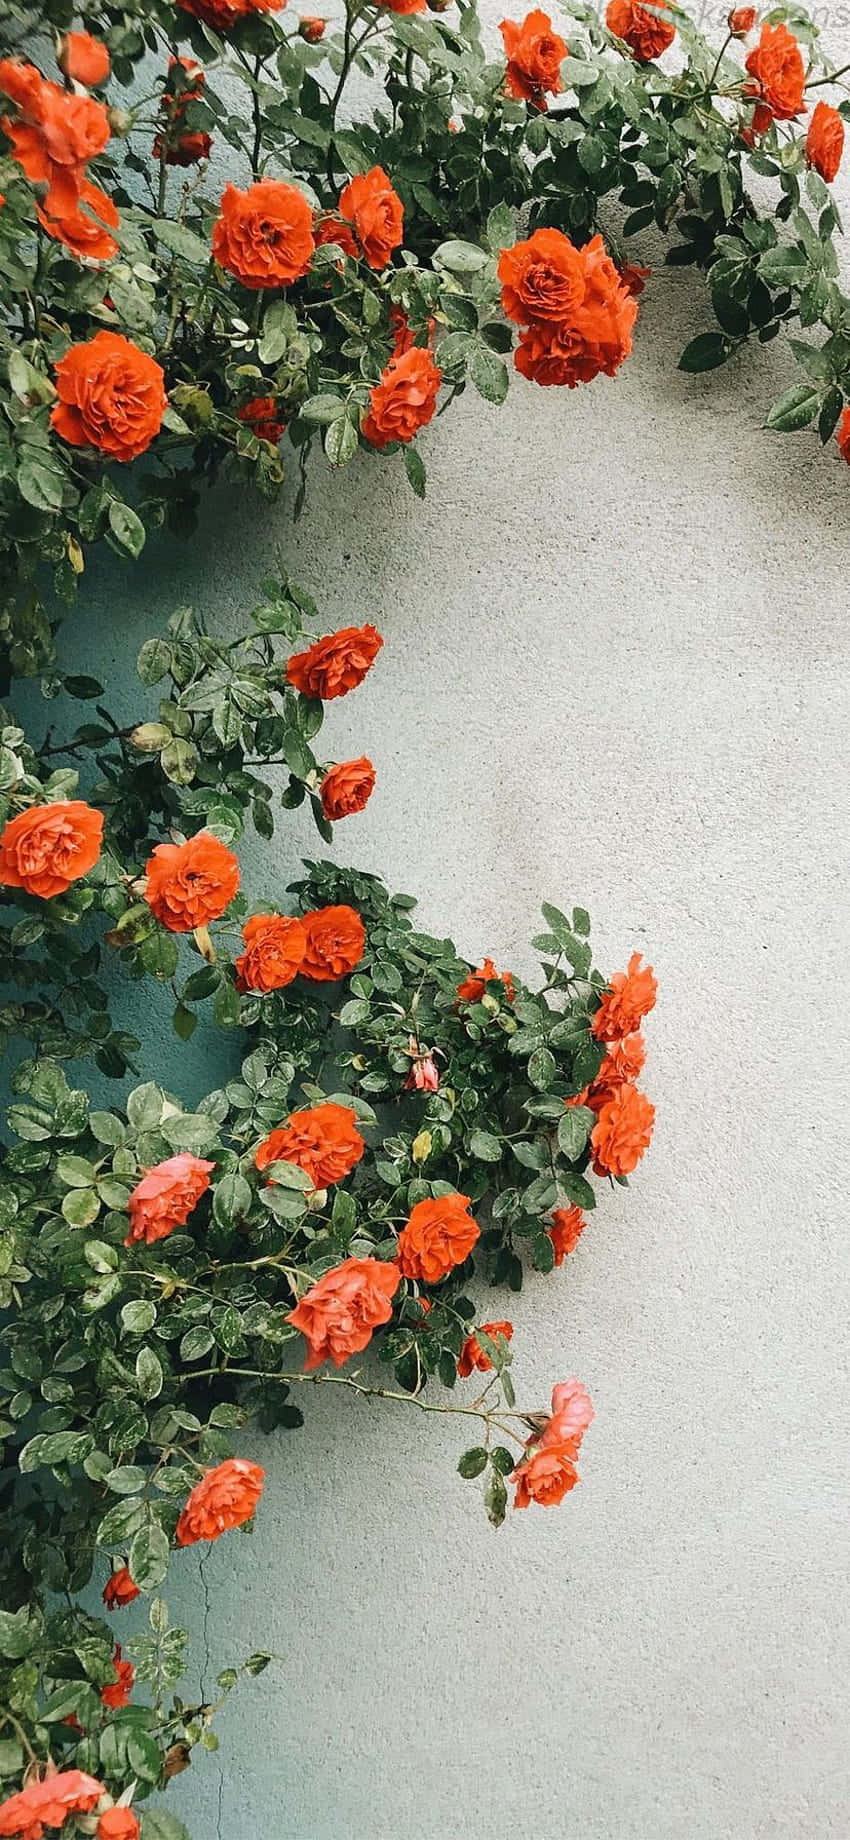 Orange Flowers Climbing A Wall Wallpaper